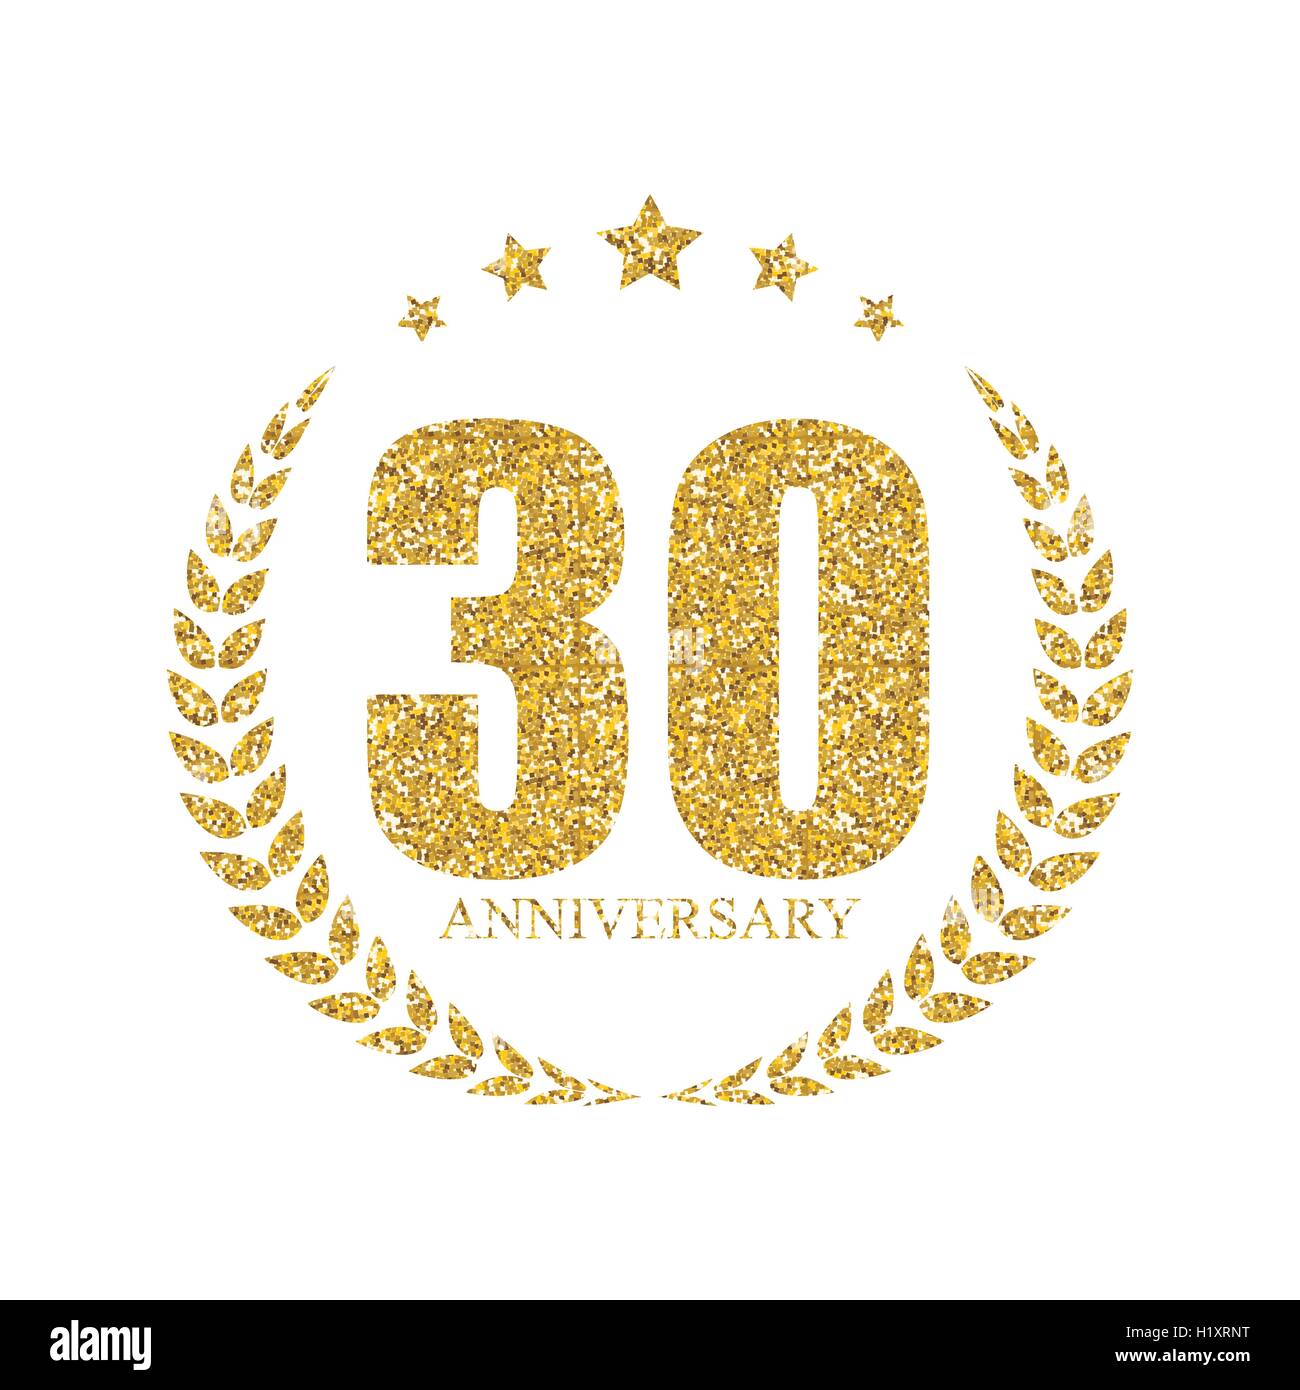 30 ans anniversaire Logo du modèle Vector Illustration Illustration de Vecteur